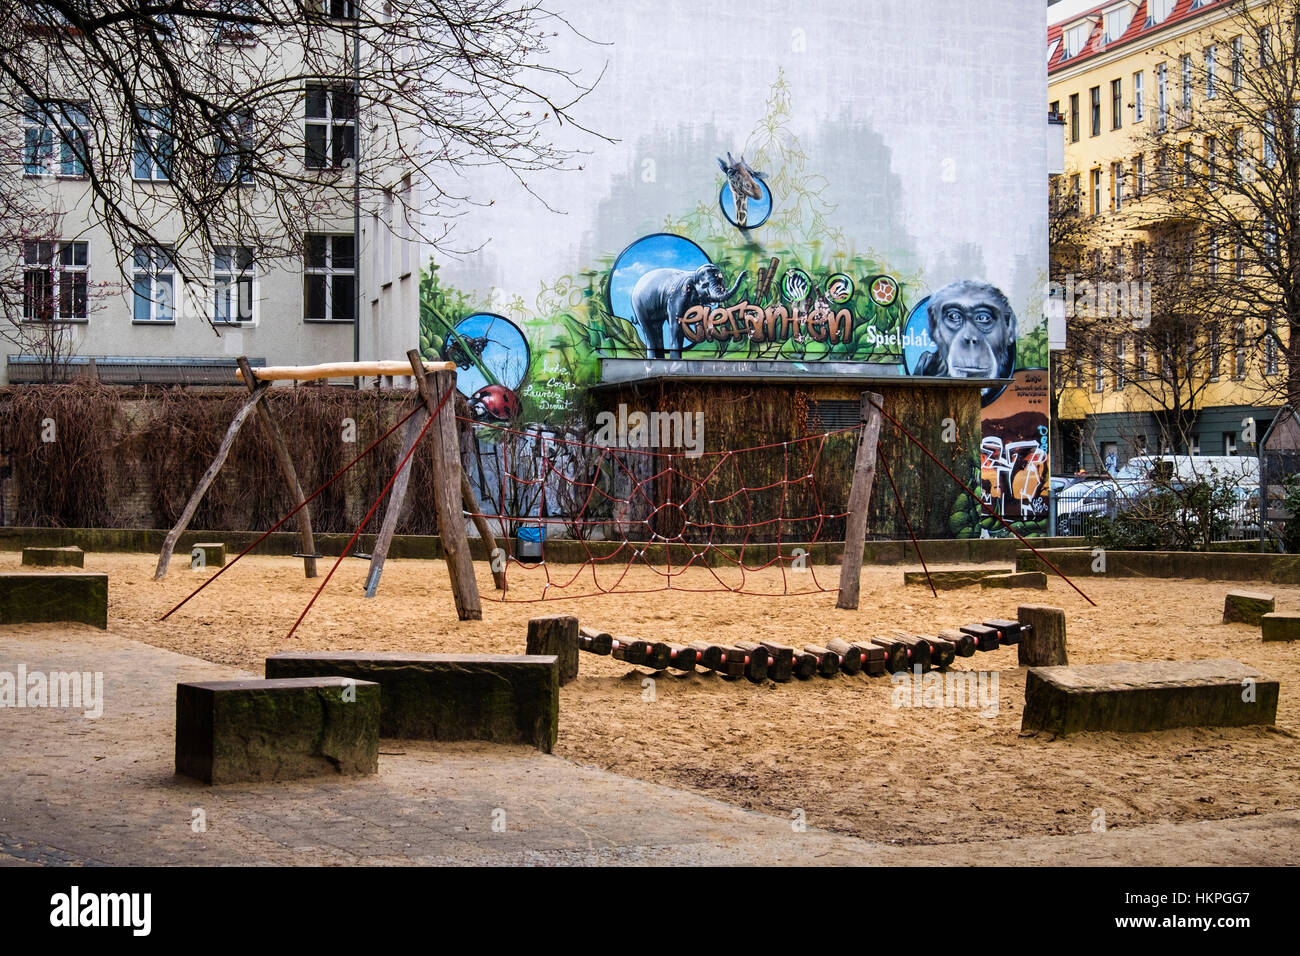 Berlin, Prenzlauer Berg, aire de jeux pour enfants avec balançoires et street art Banque D'Images